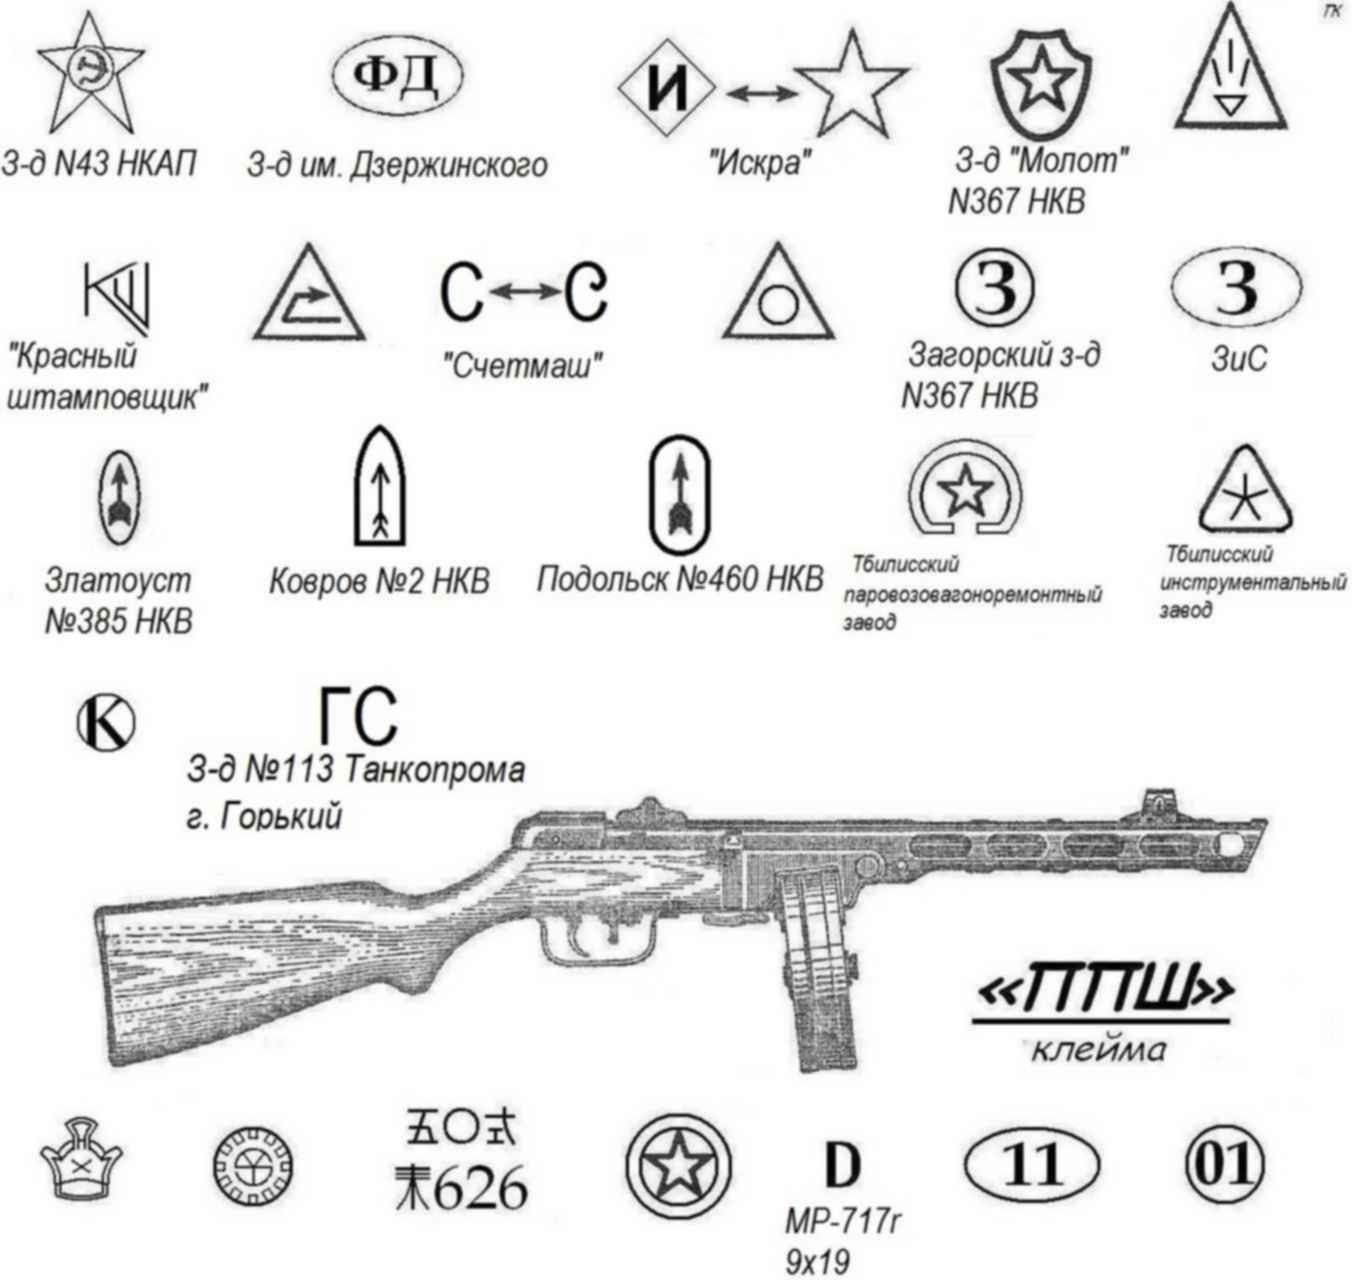 Какой из представленных на фотографиях образец советского оружия носил неофициальное женское имя